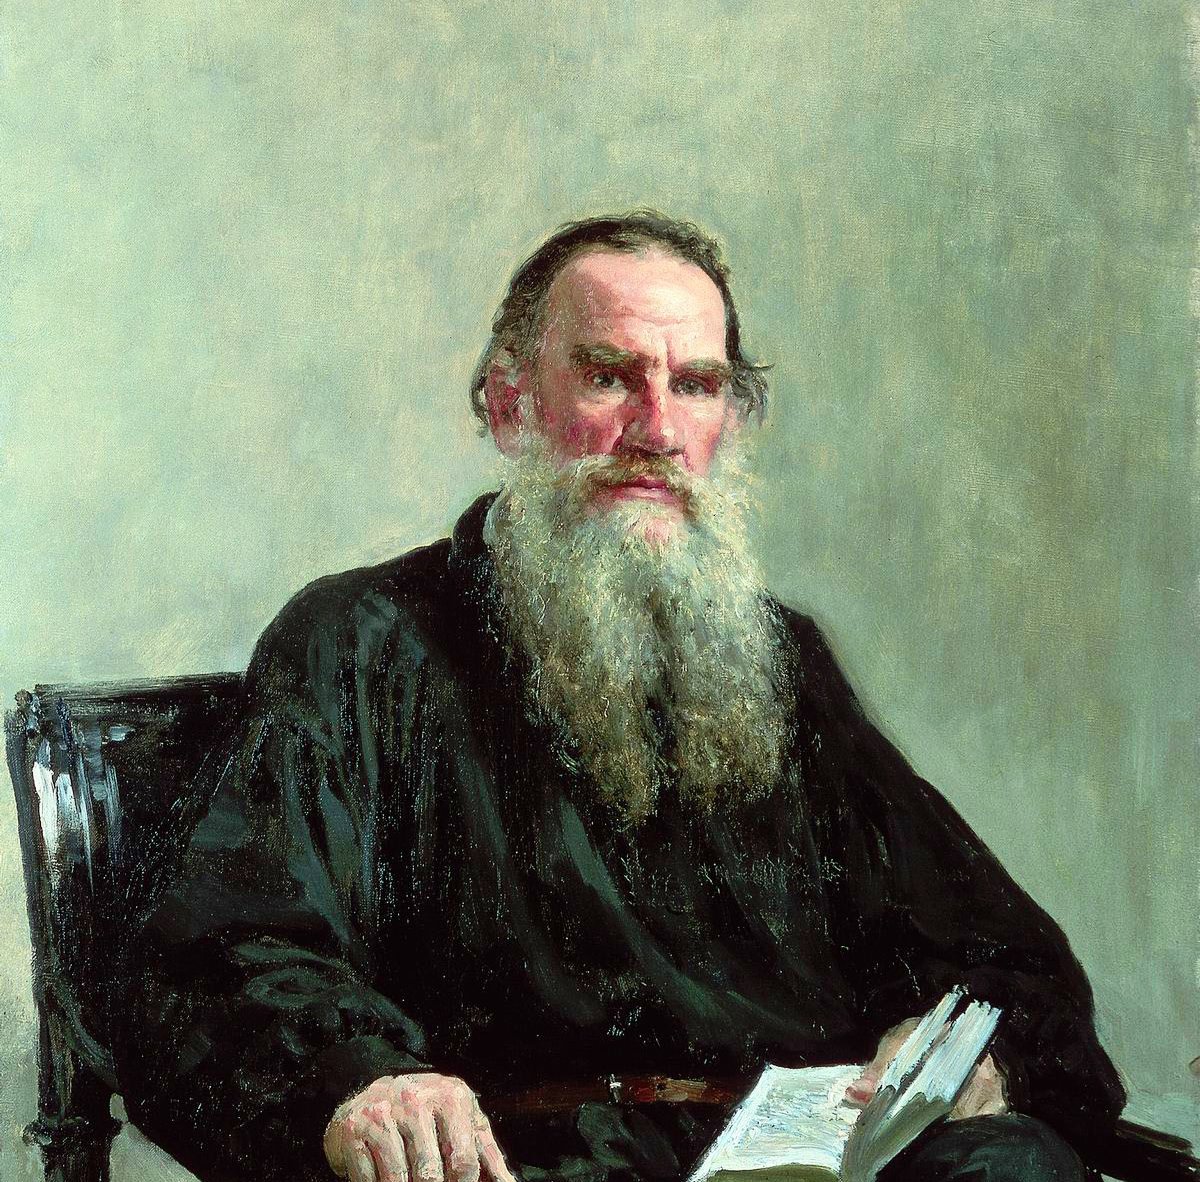 La mimbrera, un cuento de Leon Tolstói